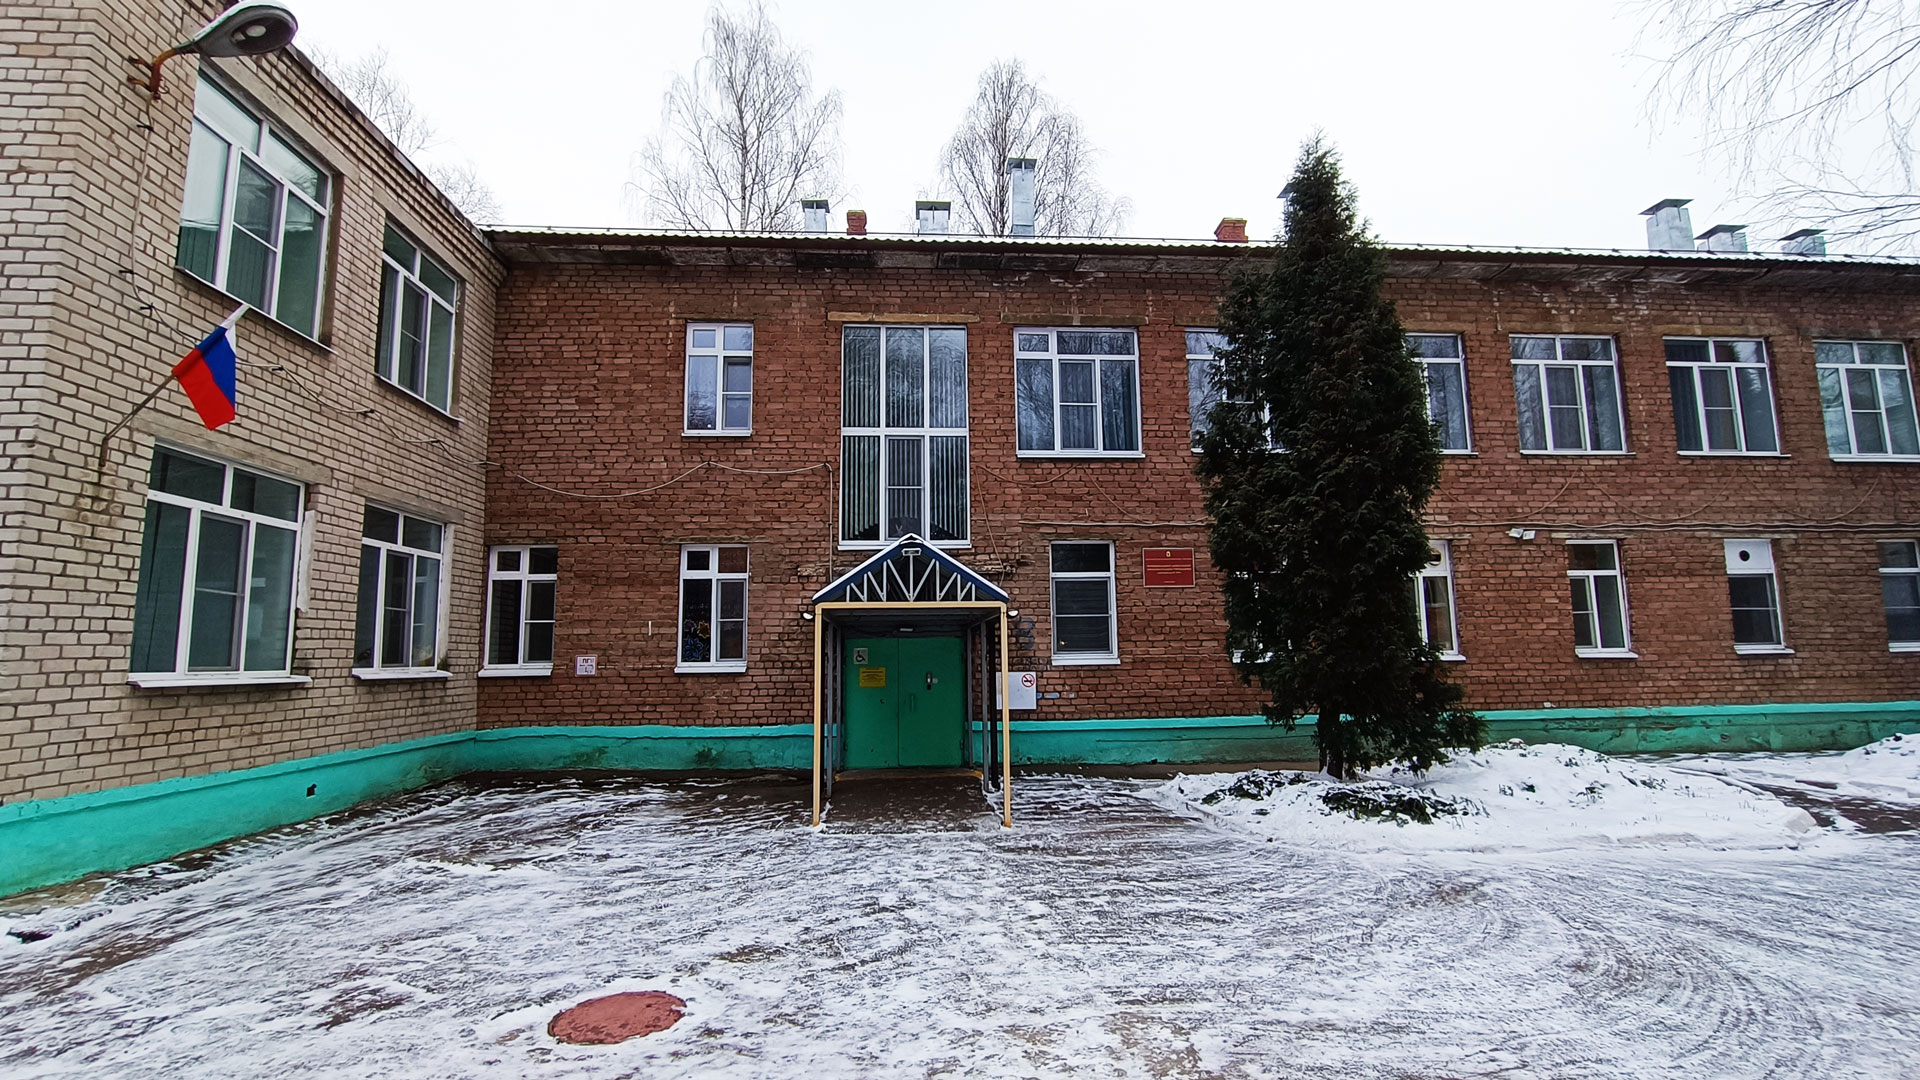 Детский сад 104 Ярославль: общий вид здания по ул. 50 лет ВЛКСМ, 8.